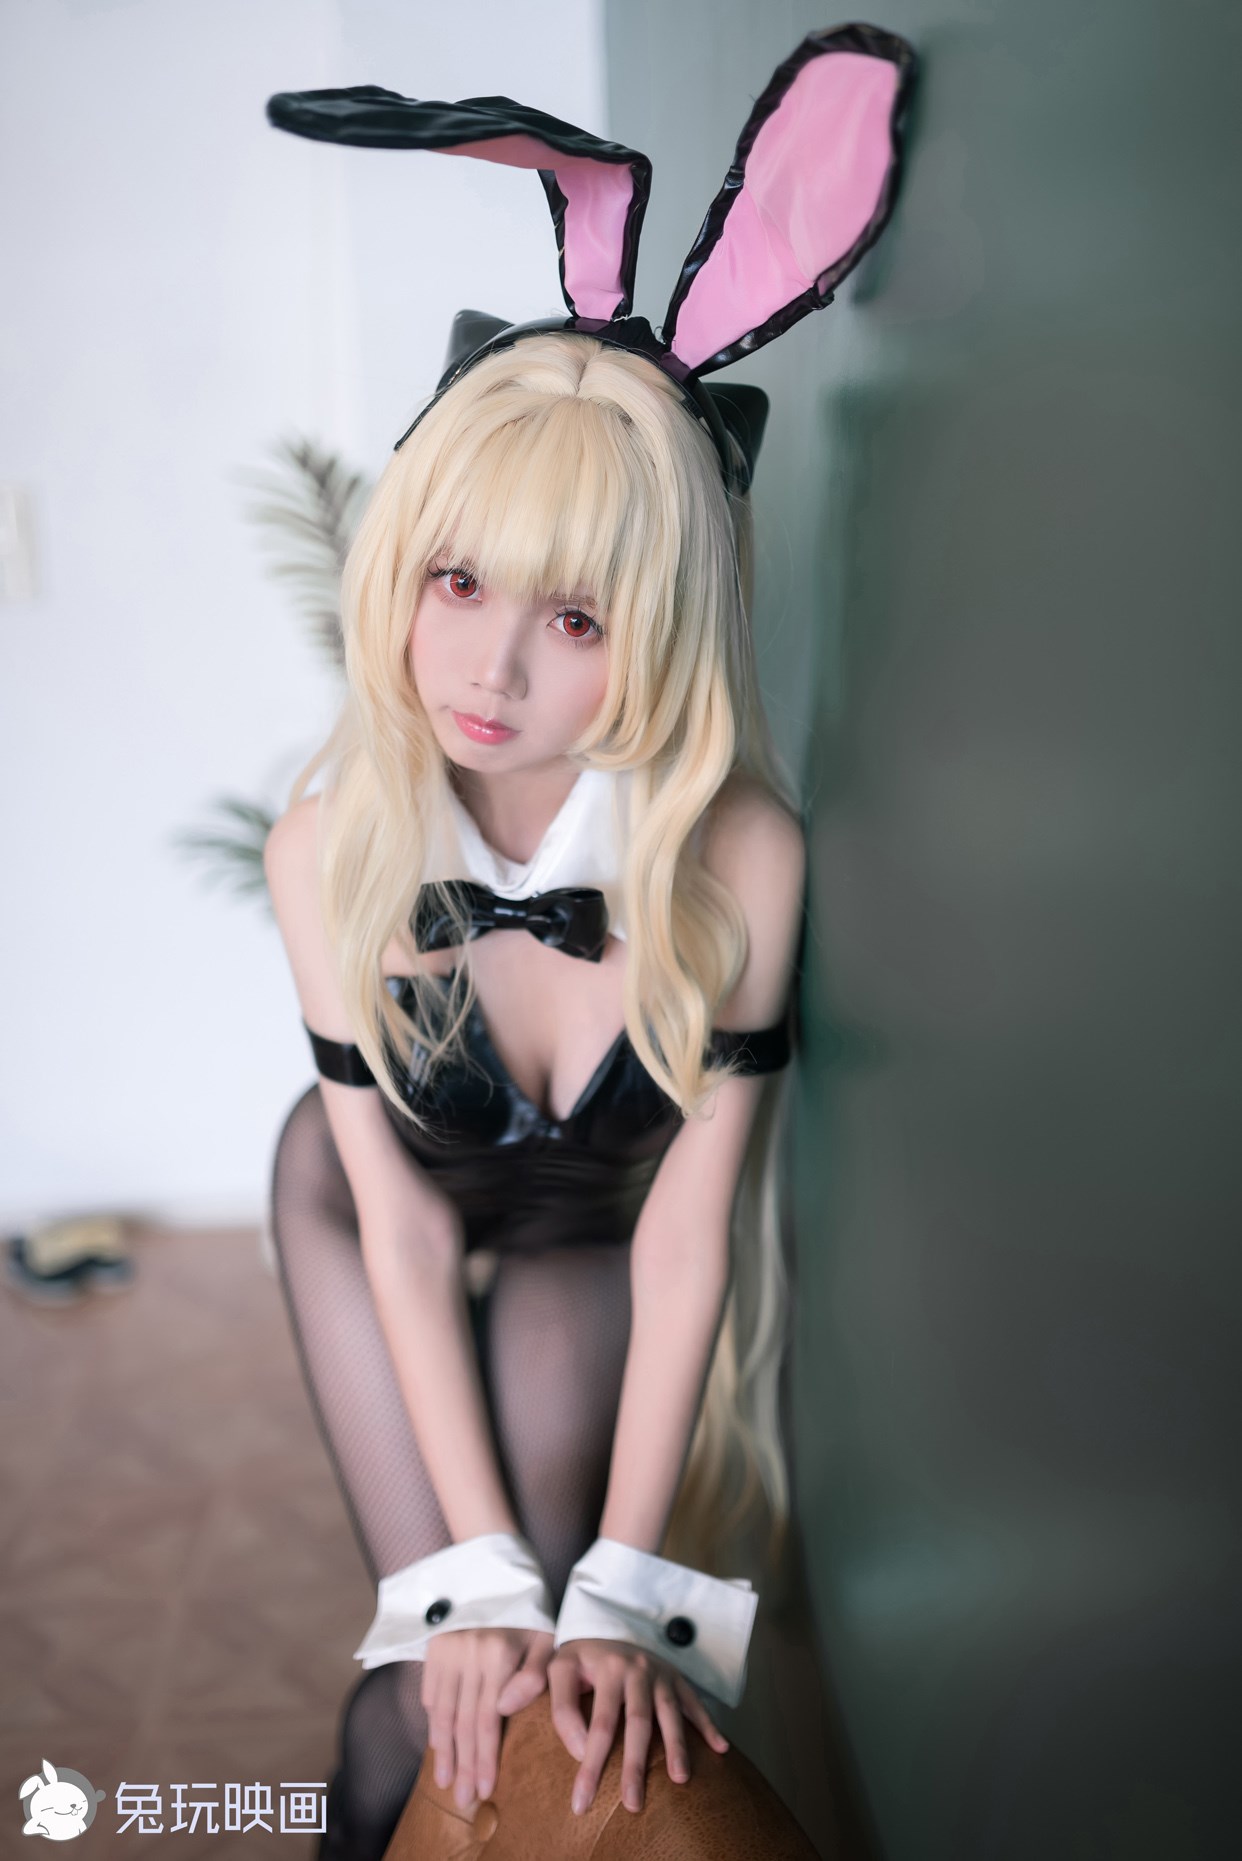 【兔玩映画】兔女郎vol.o8 - 黑兔 兔玩映画 第28张